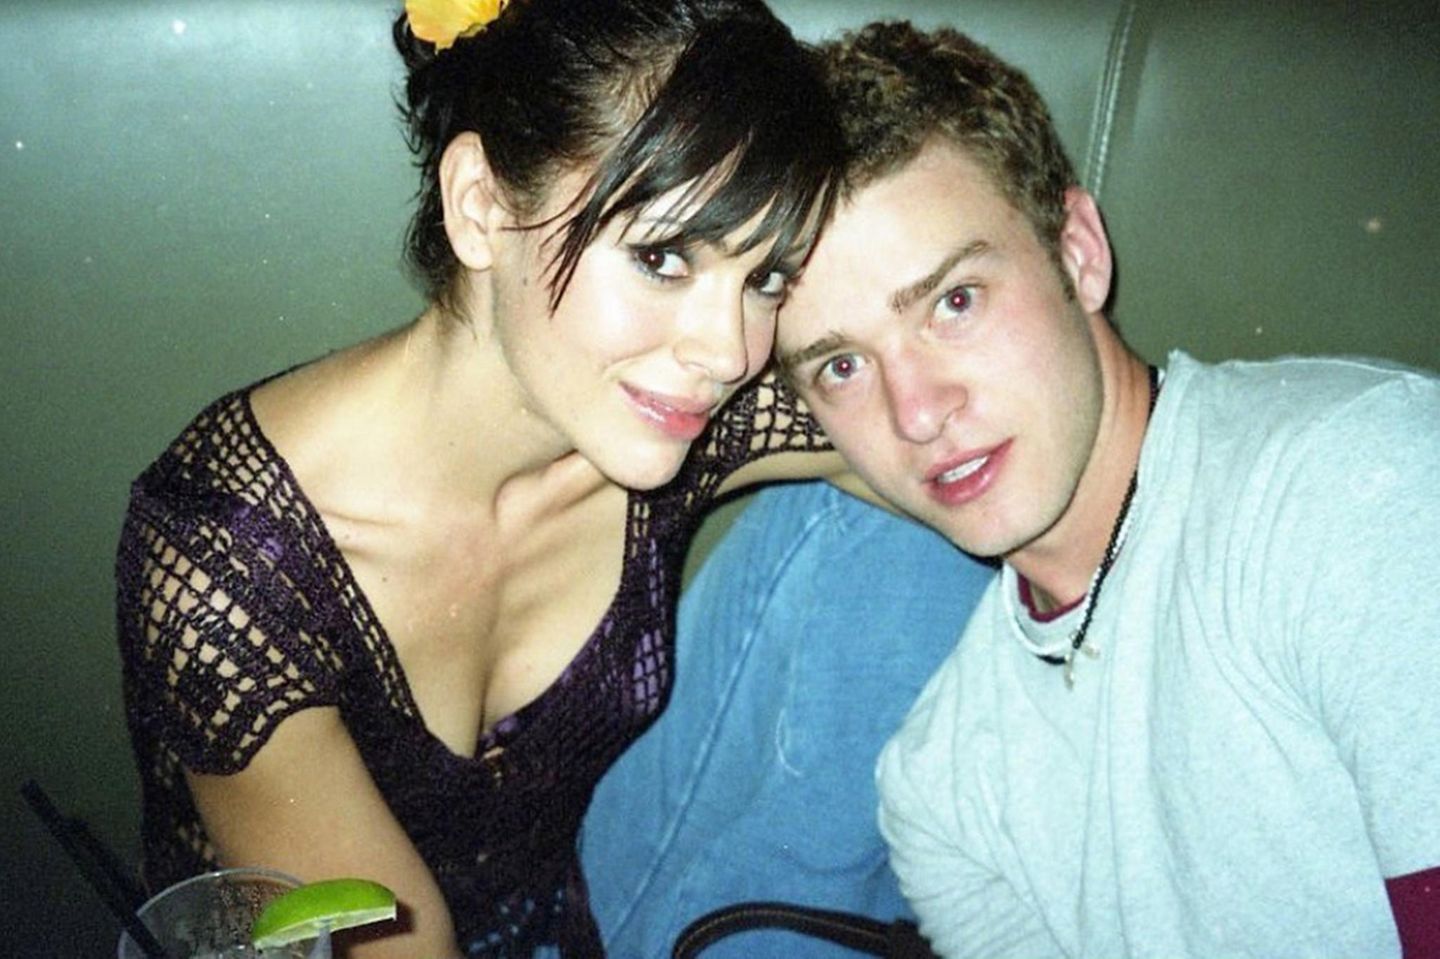 Kurz nach der Trennung von Britney Spears 2002 waren Alyssa Milano und Justin Timberlake kurzzeitig ein Paar. Alyssa sei sein großer Schwarm gewesen, gehalten hat die Beziehung dennoch nicht. Beide sind heute glücklich verheiratet. Was Justins Frau Jessica Biel wohl davon hält, dass Alyssa dieses Throwback-Bild jetzt postet?